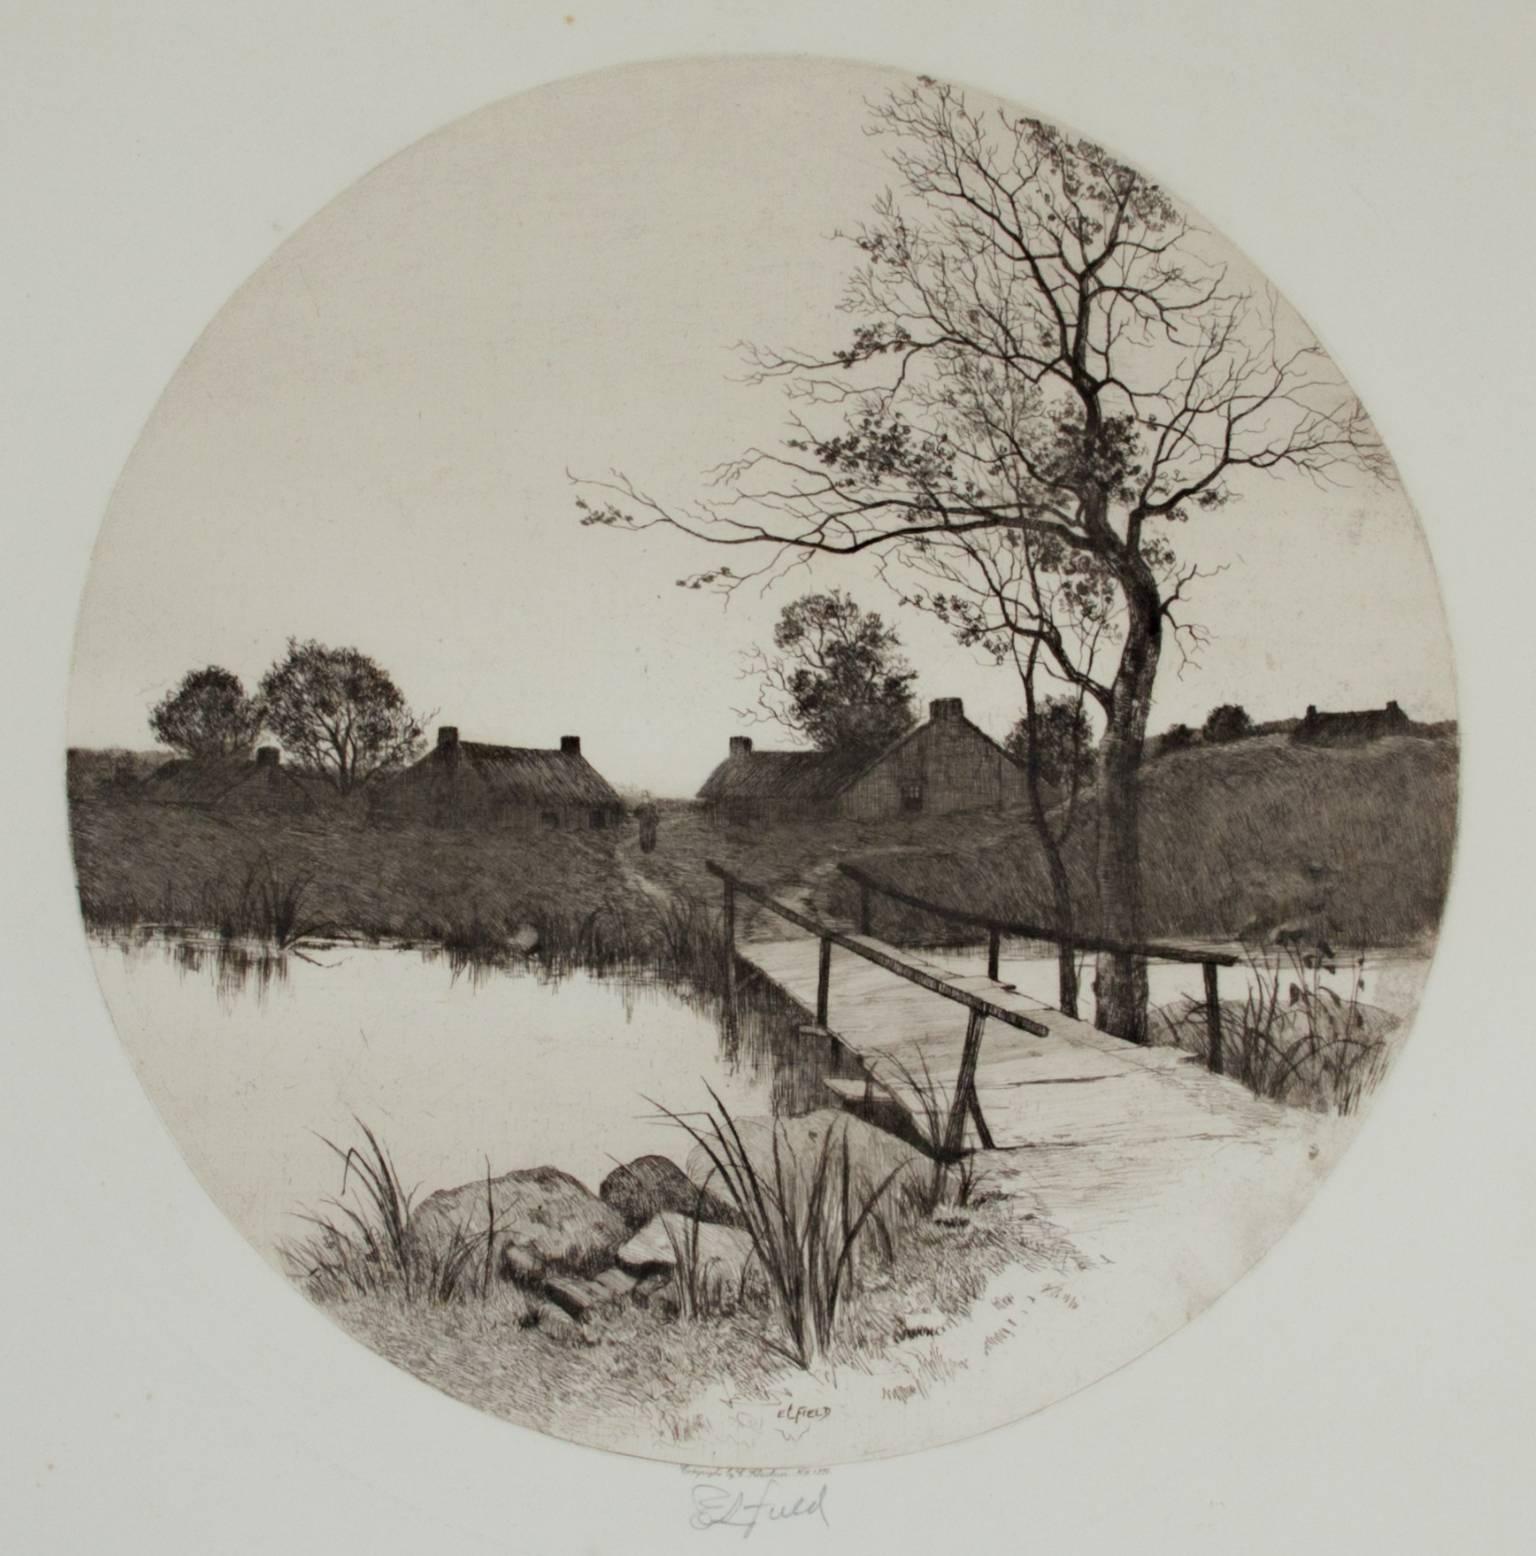 "The Boat House" est une gravure signée (en bas au centre) par Edward Loyal Field. Il dépeint une scène de l'autre côté d'une rivière au premier plan, où se trouve un ensemble de maisons pittoresques en noir et blanc.1889.

24.875" x 25" art
25.25"